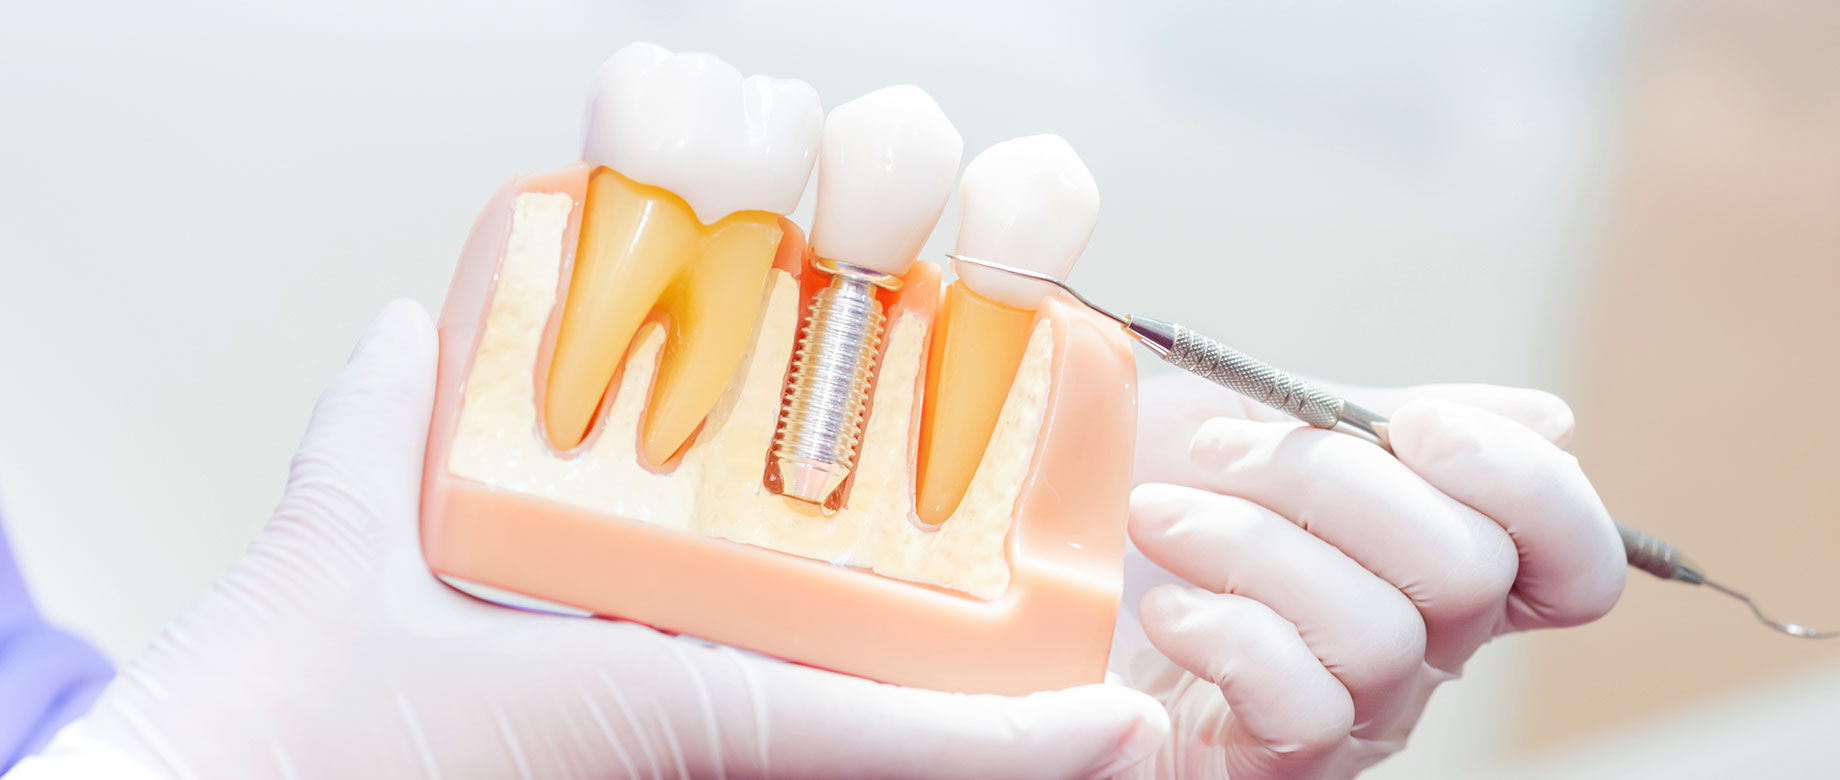 インプラントによる歯科治療とは